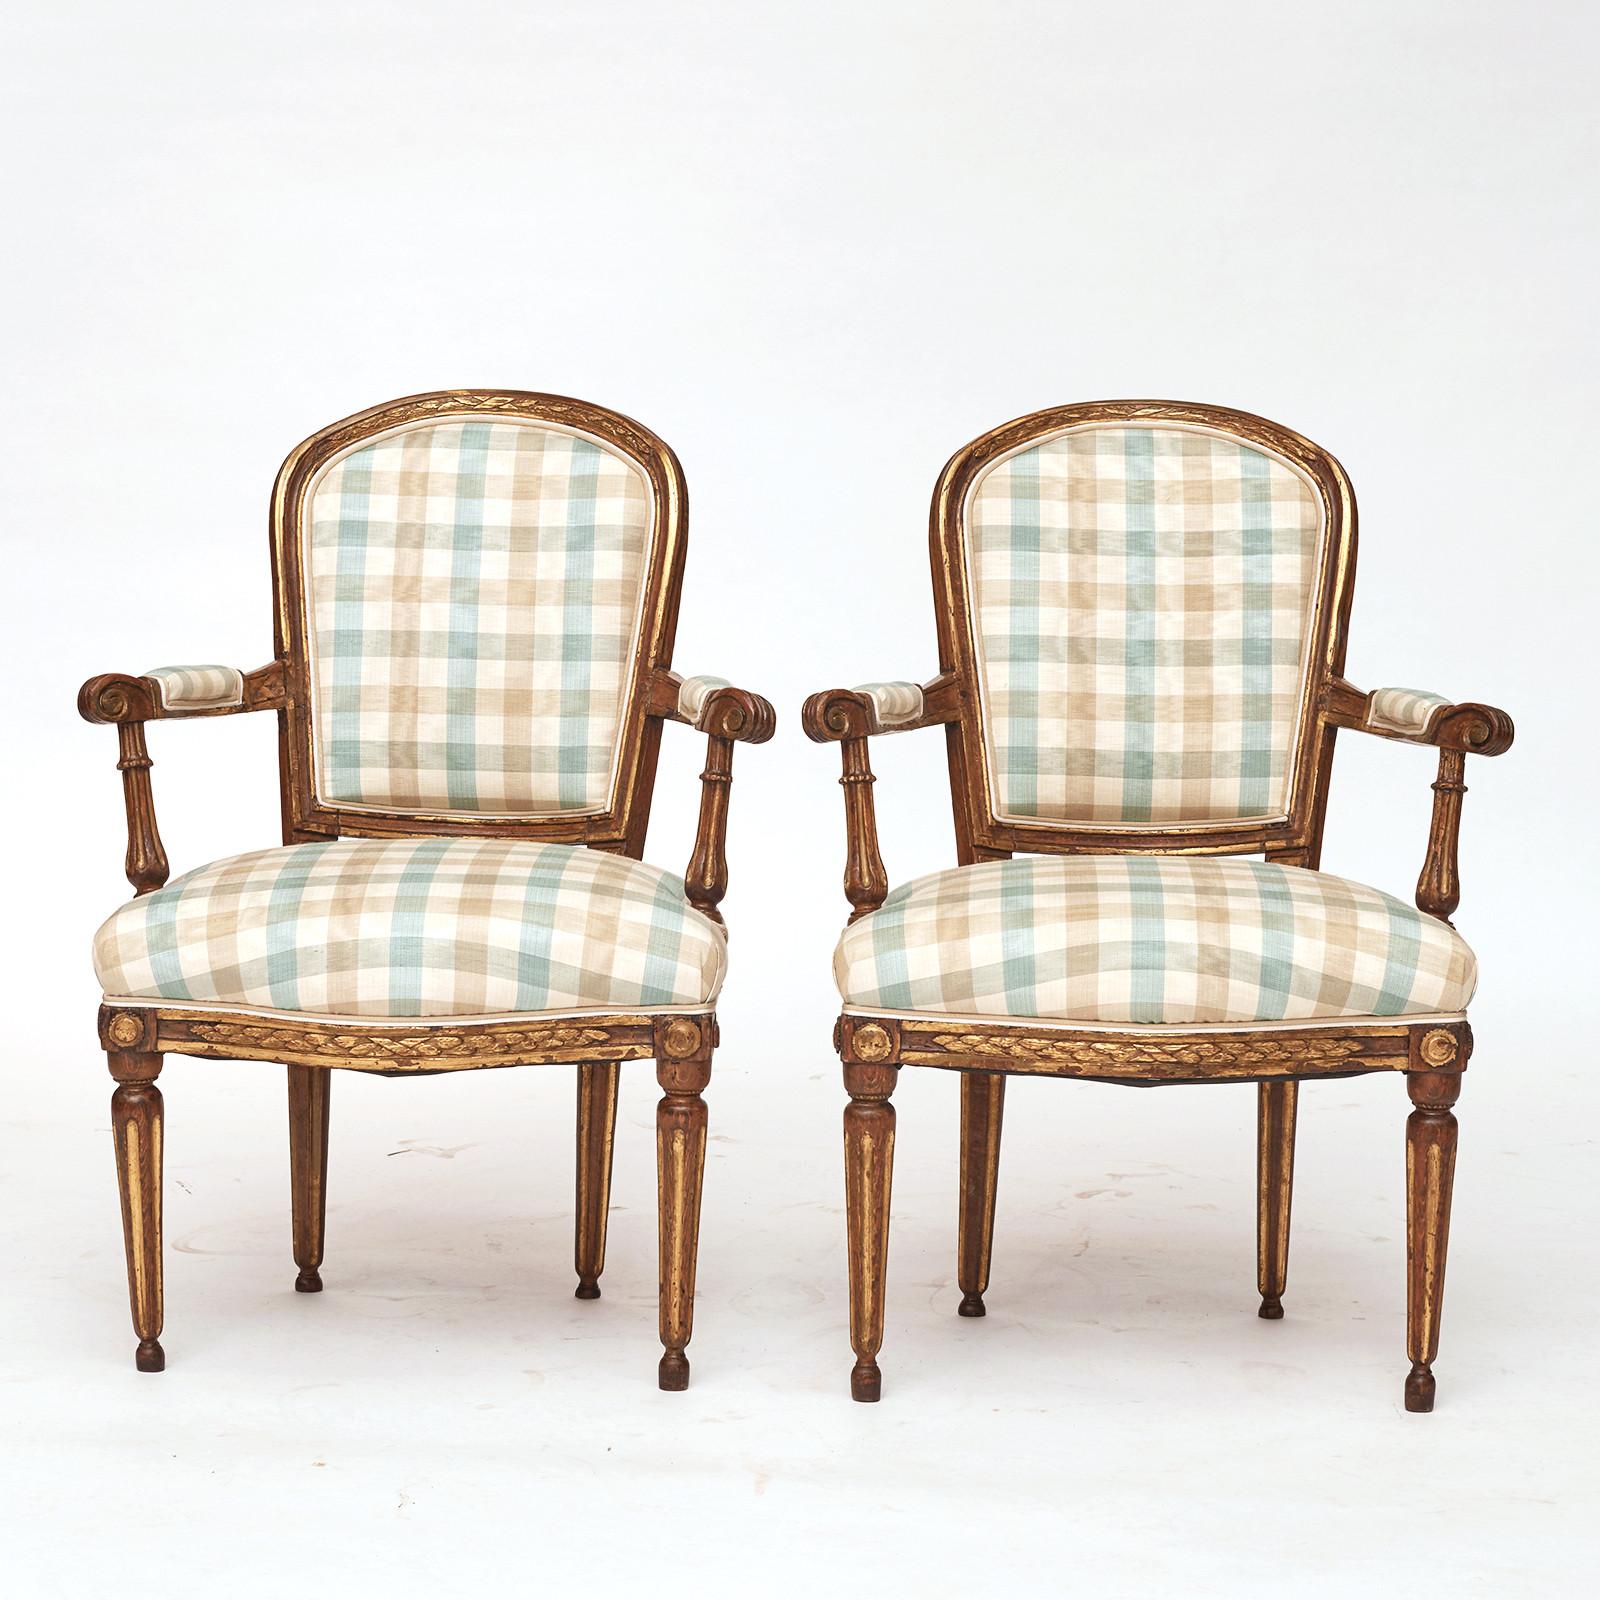 Paire de fauteuils ouverts danois en bois doré de style Louis XVI, fin du XVIIIe siècle, avec un dossier rembourré arqué, des accoudoirs droits, un siège rembourré reposant sur des pieds tournés, cannelés et effilés. 
Merveilleuse patine de bois